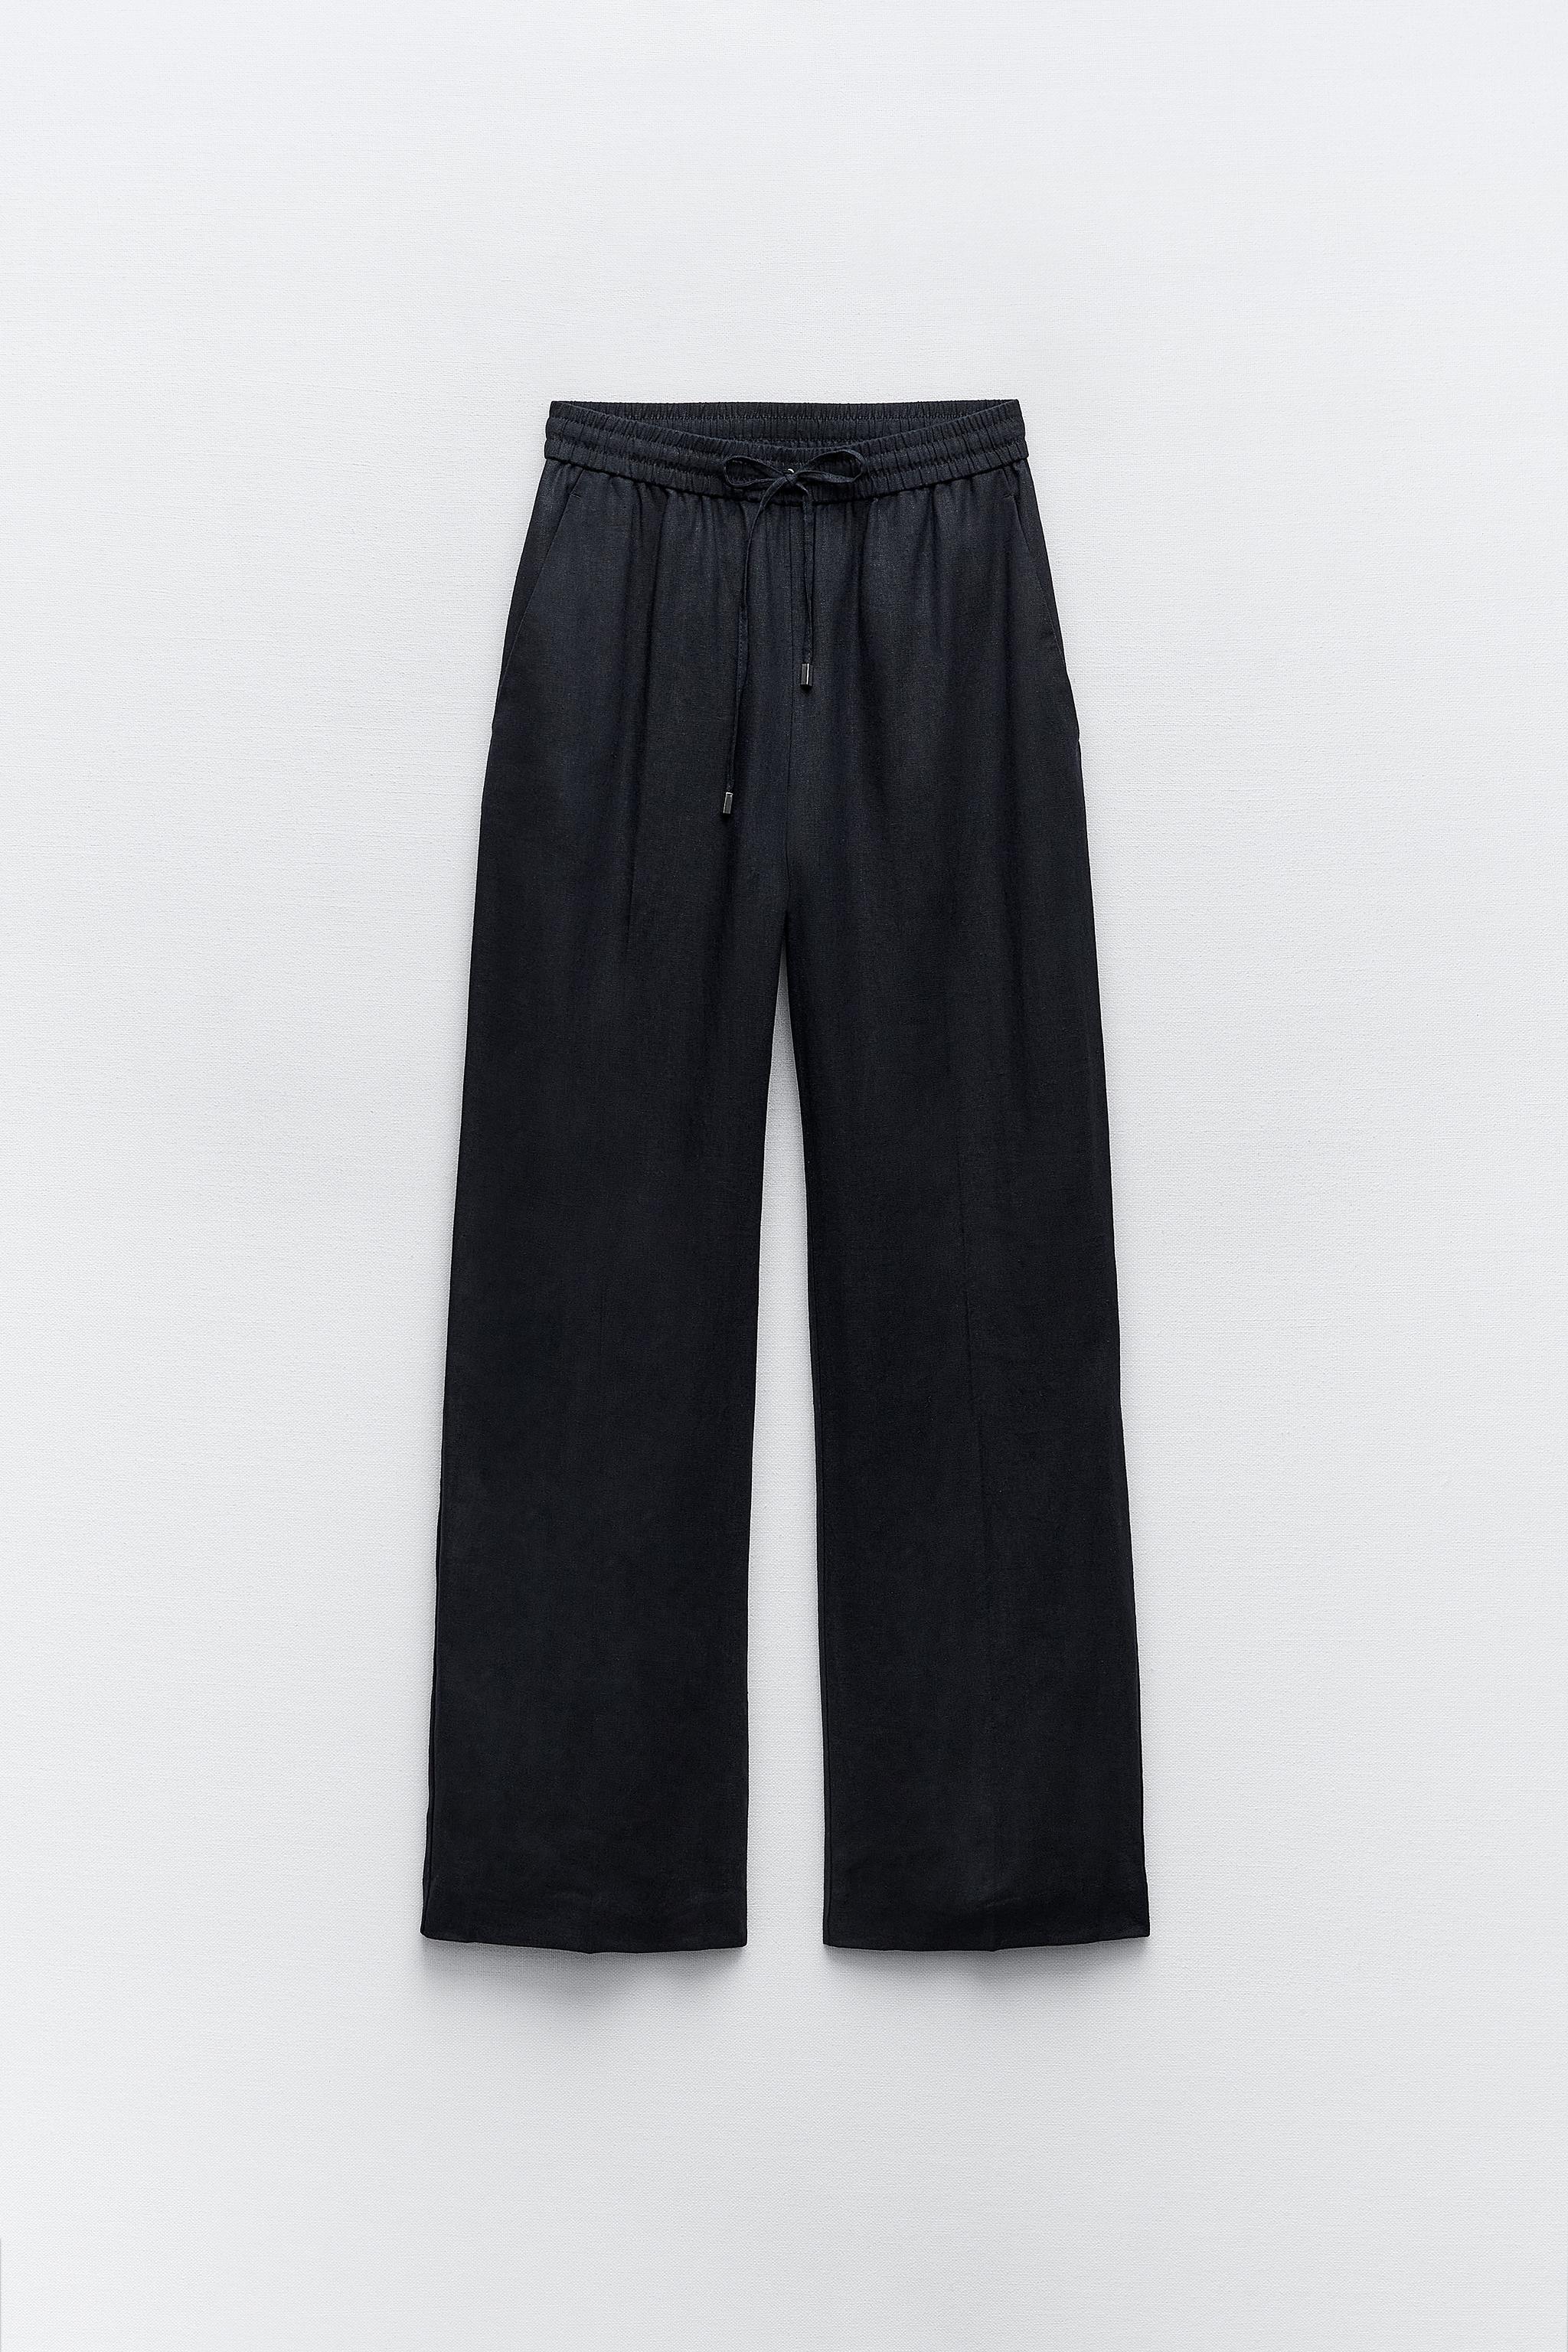 Womens Linen Baggy Pants, Washed Linen Pants, Long Linen Pants, Summer Pants,  Loose Fitting Pants, Casual Pant 0986 -  Israel